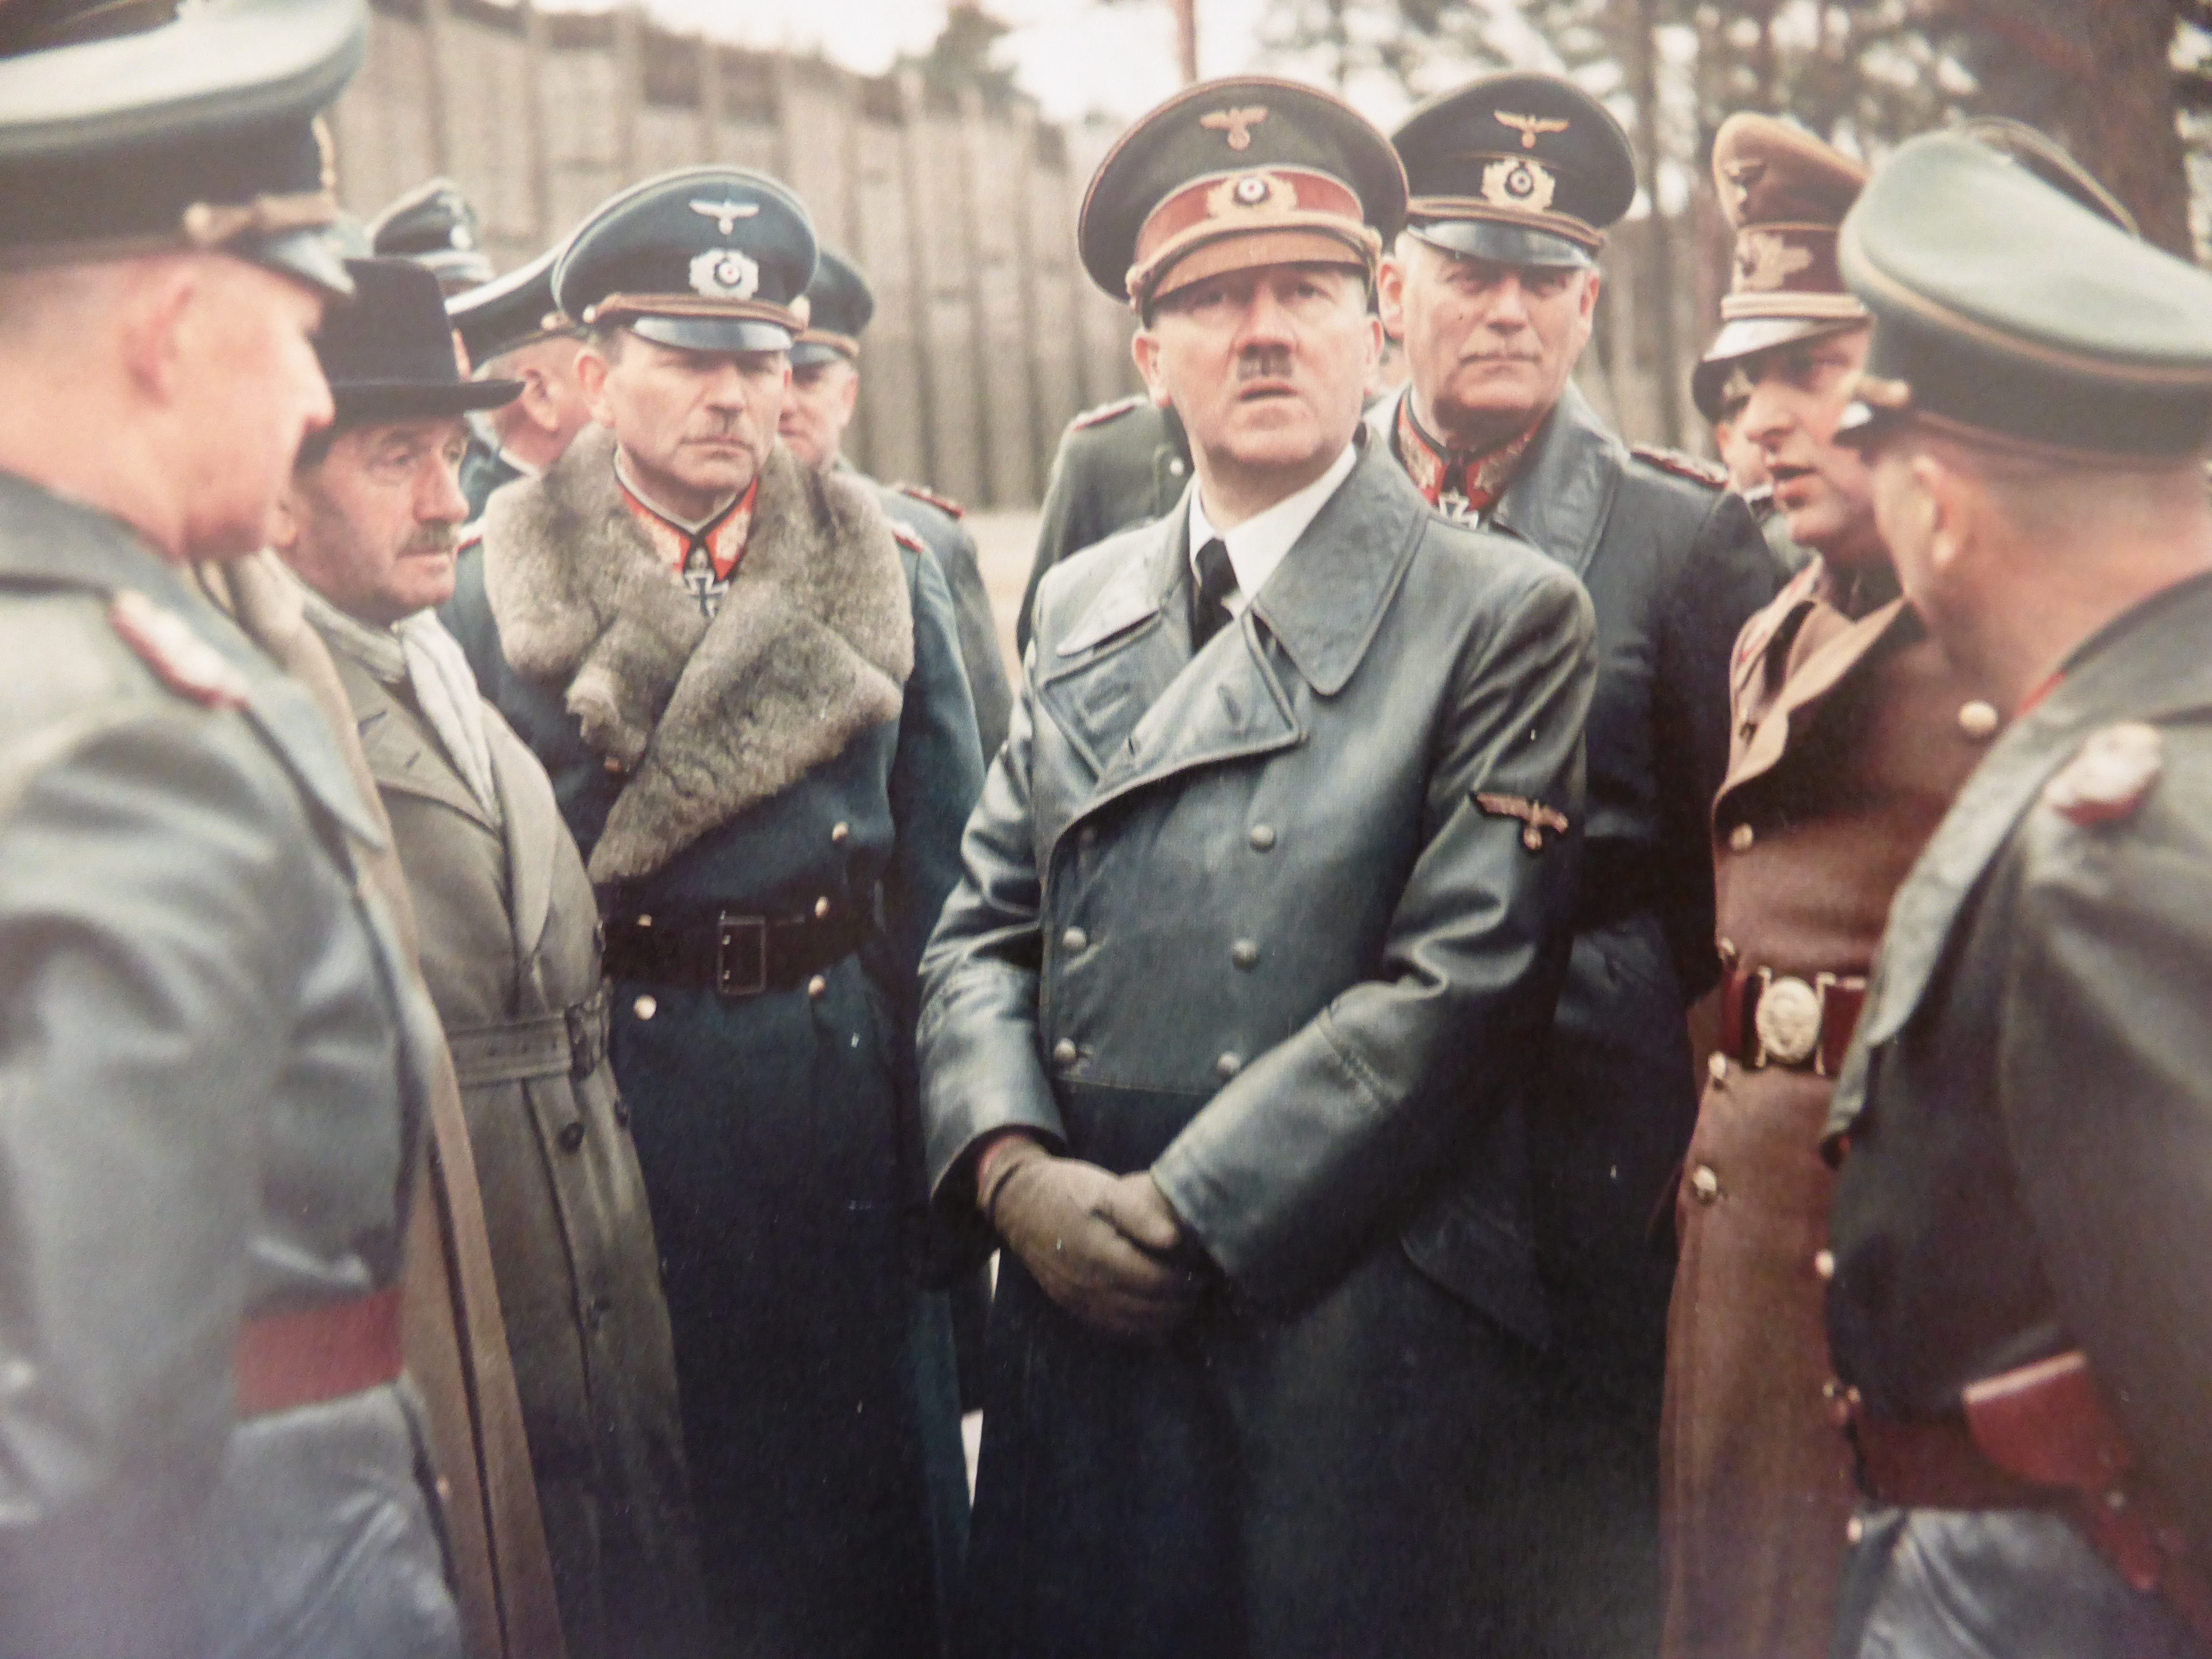 руководители фашистской германии фамилии